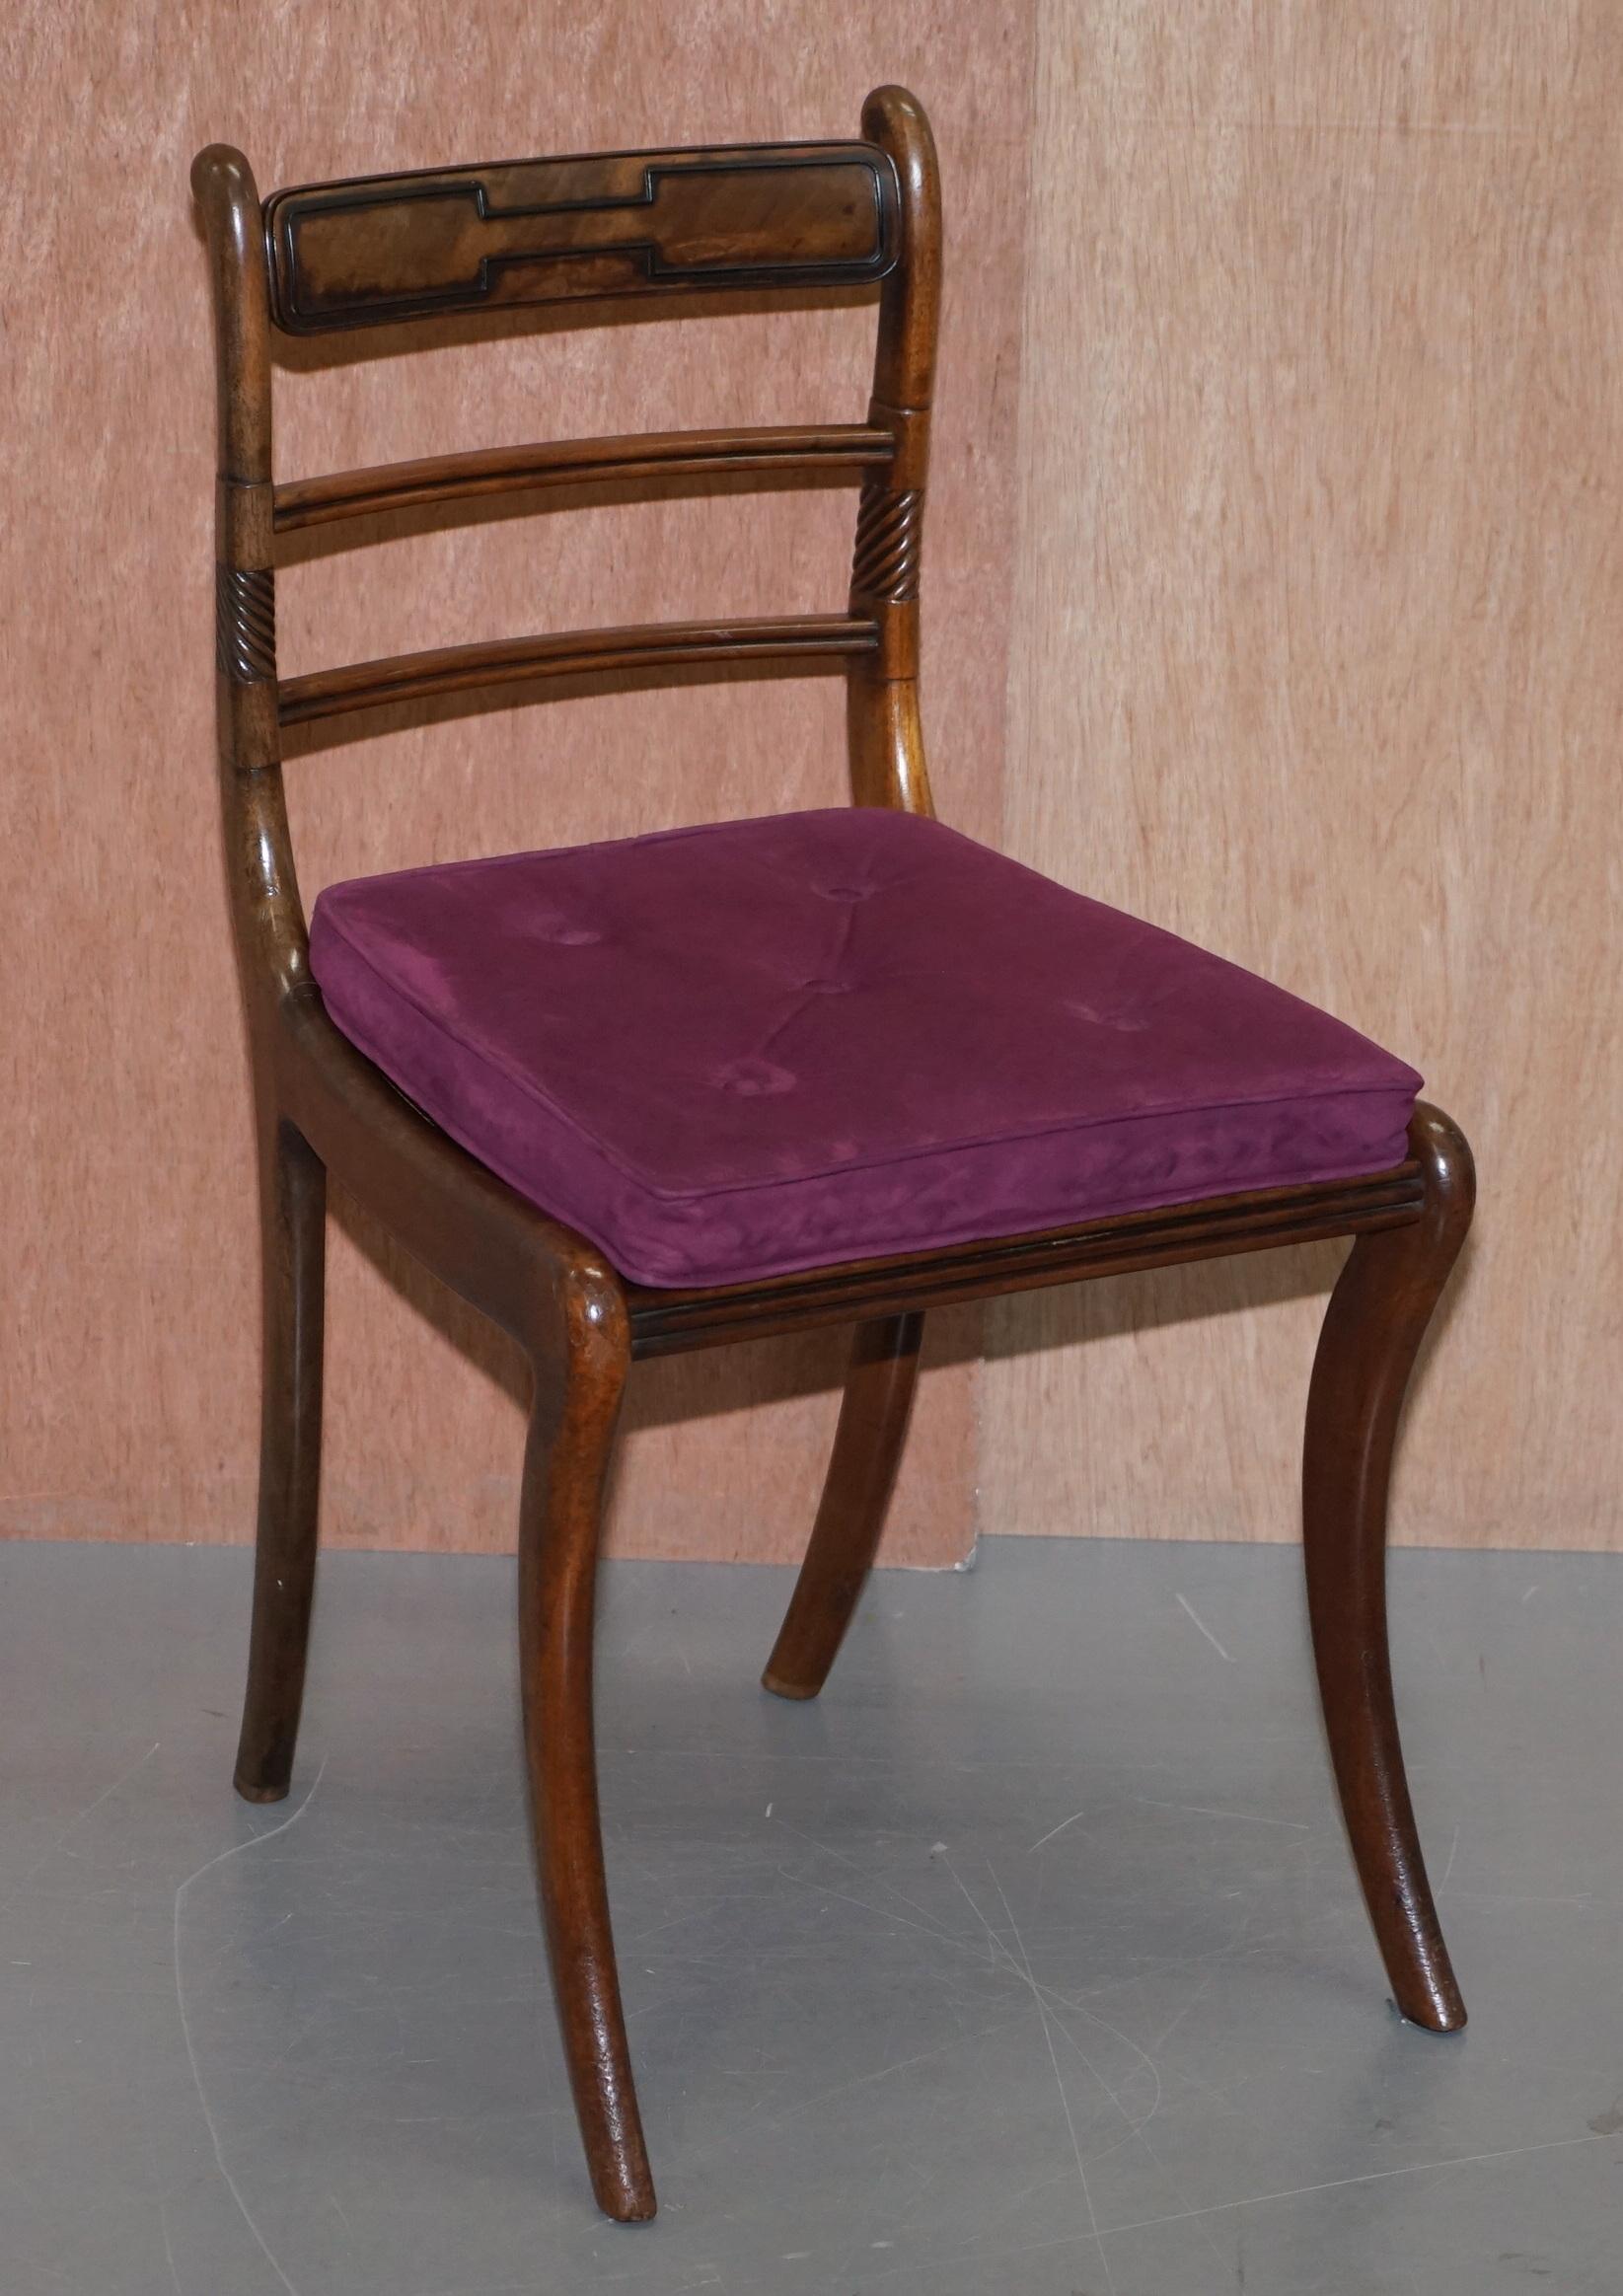 Wir freuen uns, diese erhabene Suite von sechs originalen Regency-Esszimmerstühlen (ca. 1810-1820) zum Verkauf anbieten zu können. 

Diese sind sehr gut gemacht, die Rahmen sind kunstvoll geschnitzt und mit bergere Sitze fertig. Jeder Stuhl wird mit